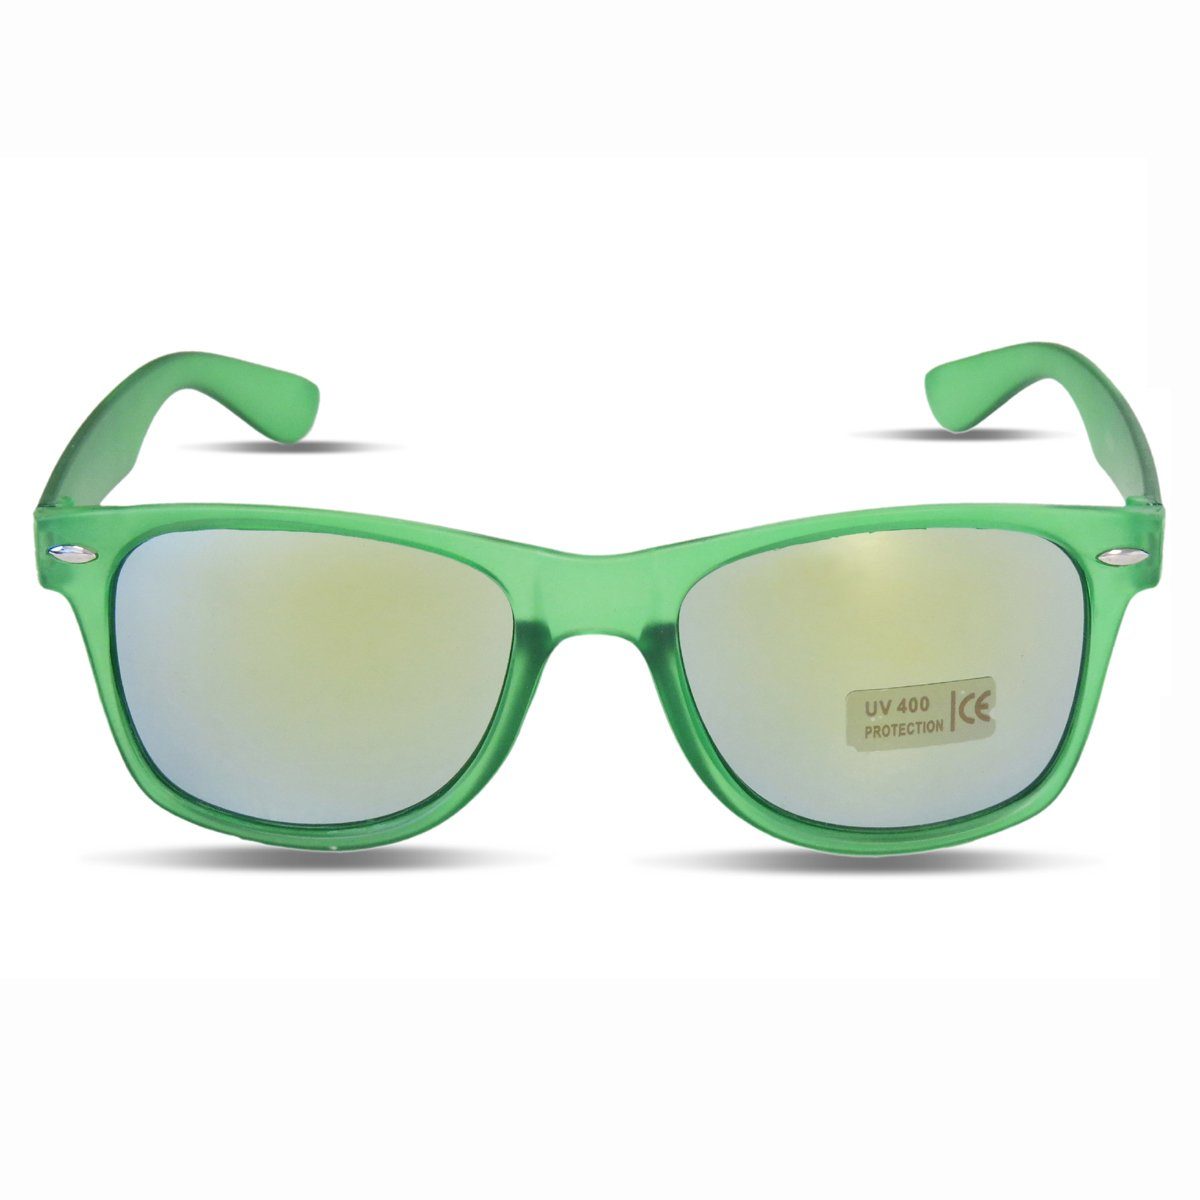 Sonia Originelli Sonnenbrille Sonnenbrille Fasching Verspiegelt Party Transparent Onesiz gruen | Sonnenbrillen